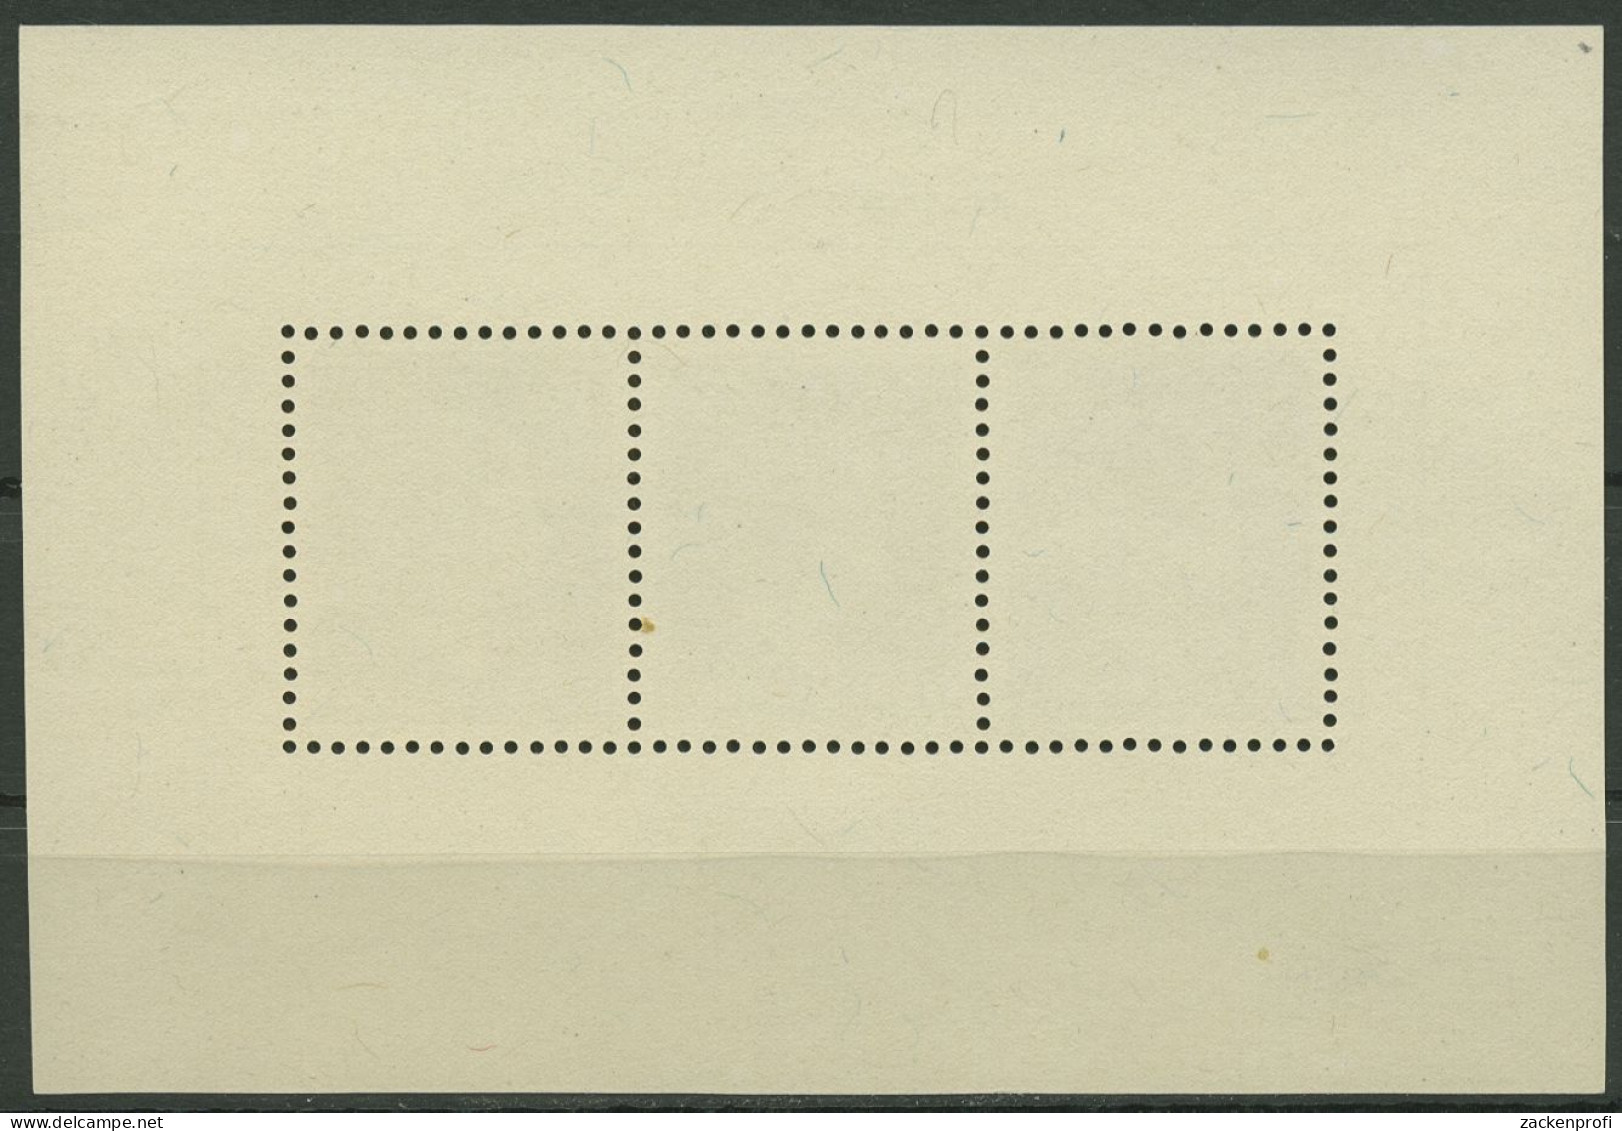 Luxemburg 1949 Herzogin Charlotte Block 7, Rückseite Fehler, Postfrisch (C95367) - Blocks & Sheetlets & Panes